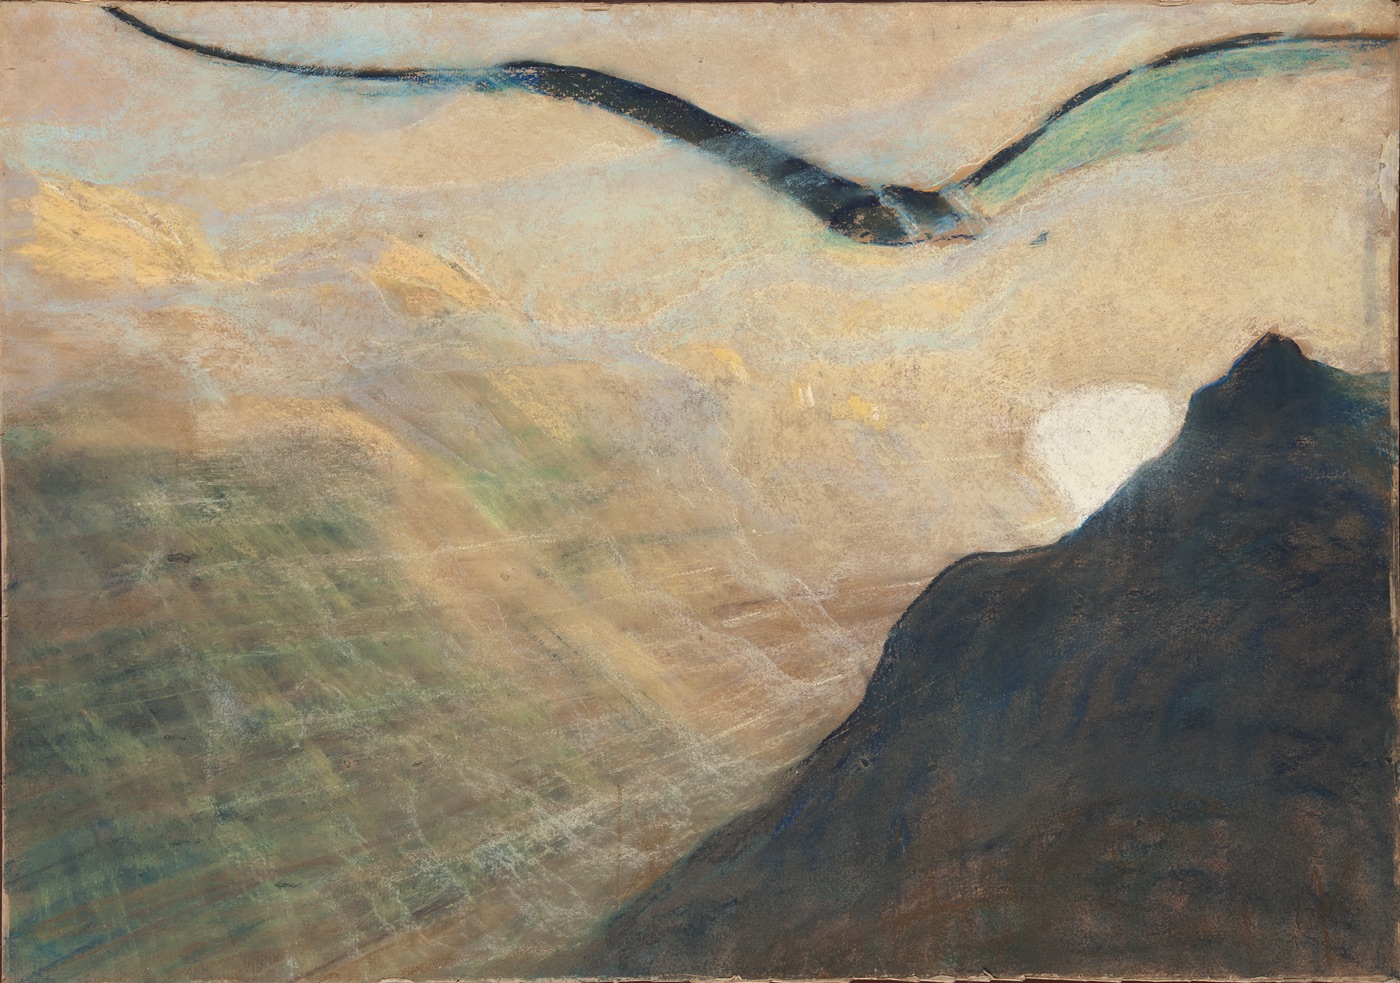 Vești by Mikalojus Konstantinas Čiurlionis - 1905 - 29.6 x 21.3 cm 